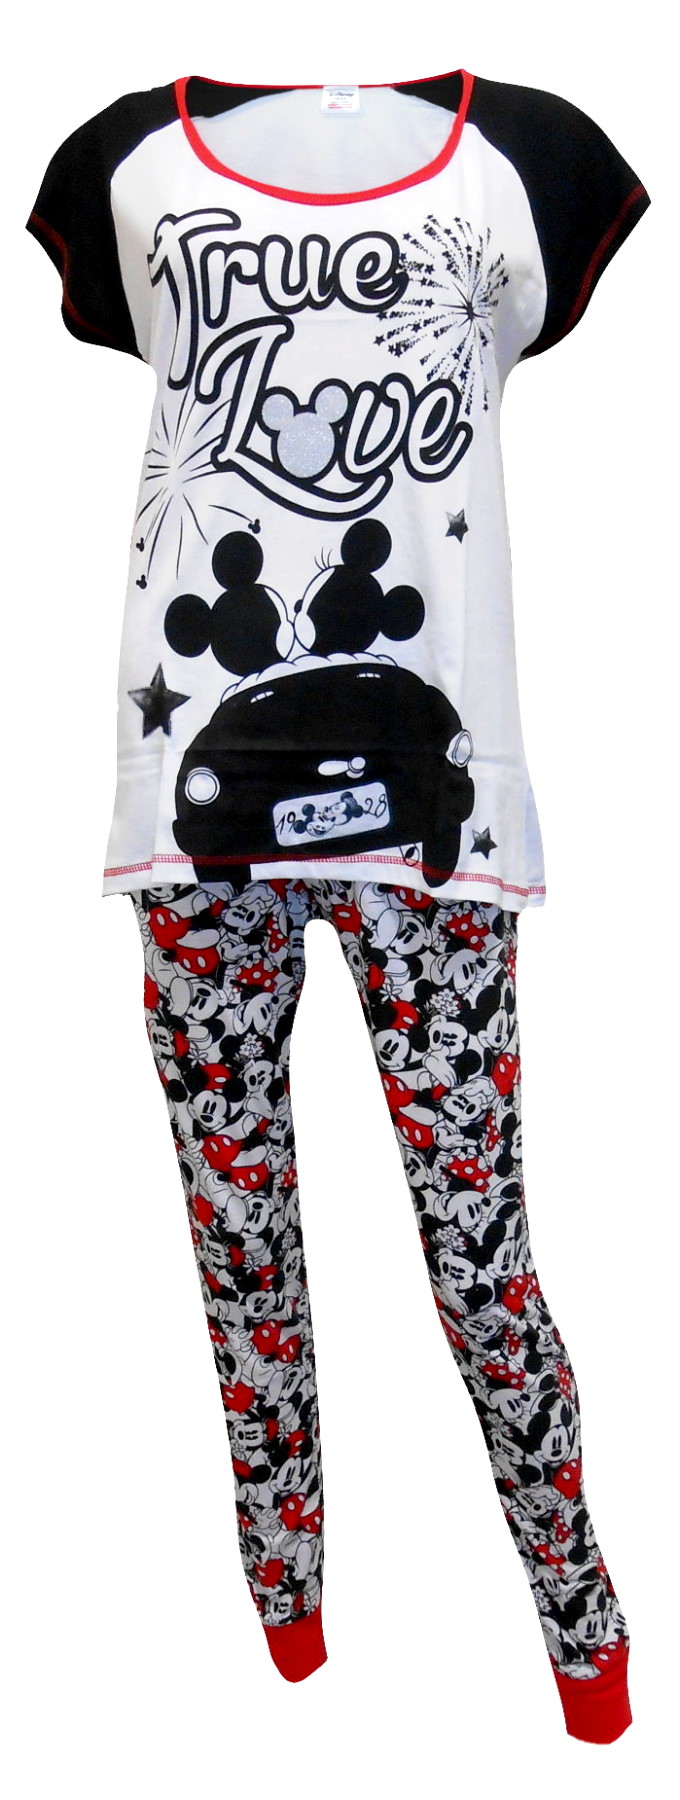 Minnie Mouse Pyjamas PJ64 (2).JPG  by Thingimijigs